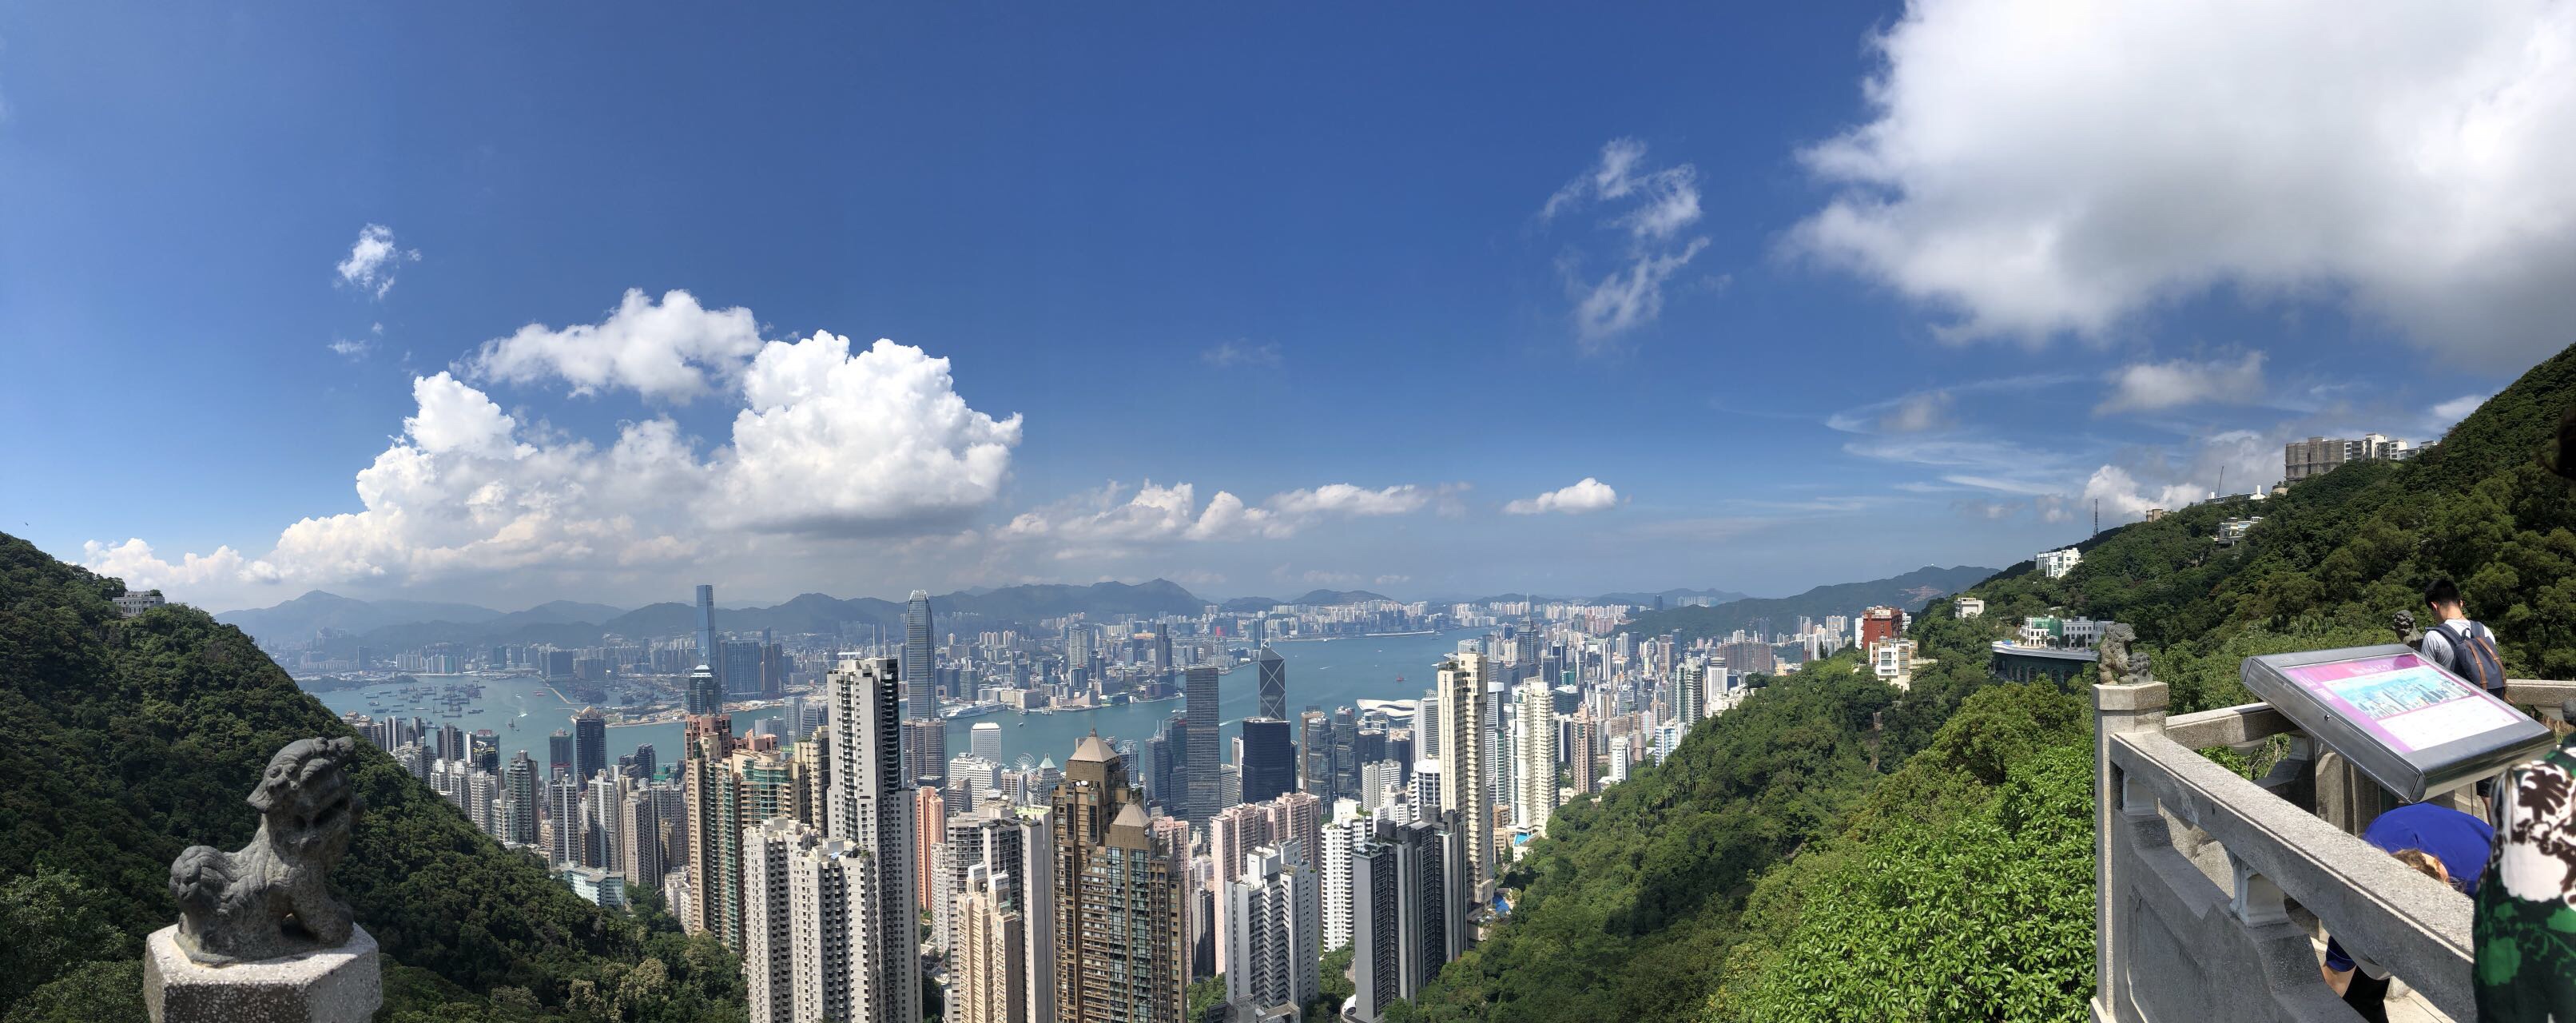 香港有啥好玩的景点图片